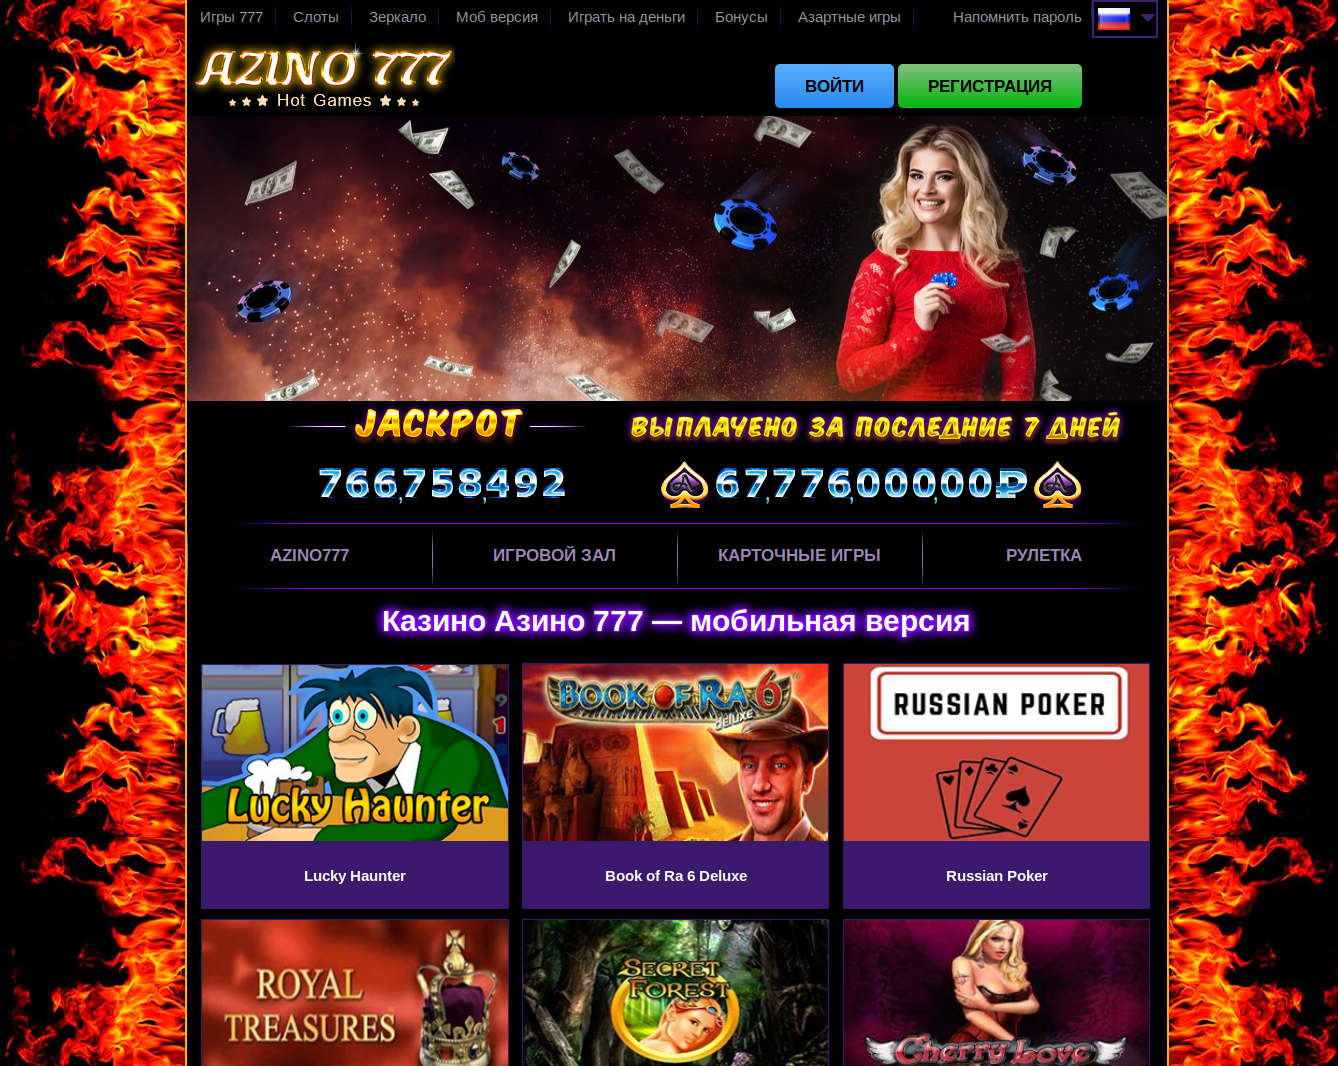 Онлайн казино азино777 официальный сайт 777online info играть в игровые автоматы с бонусом при регистрации